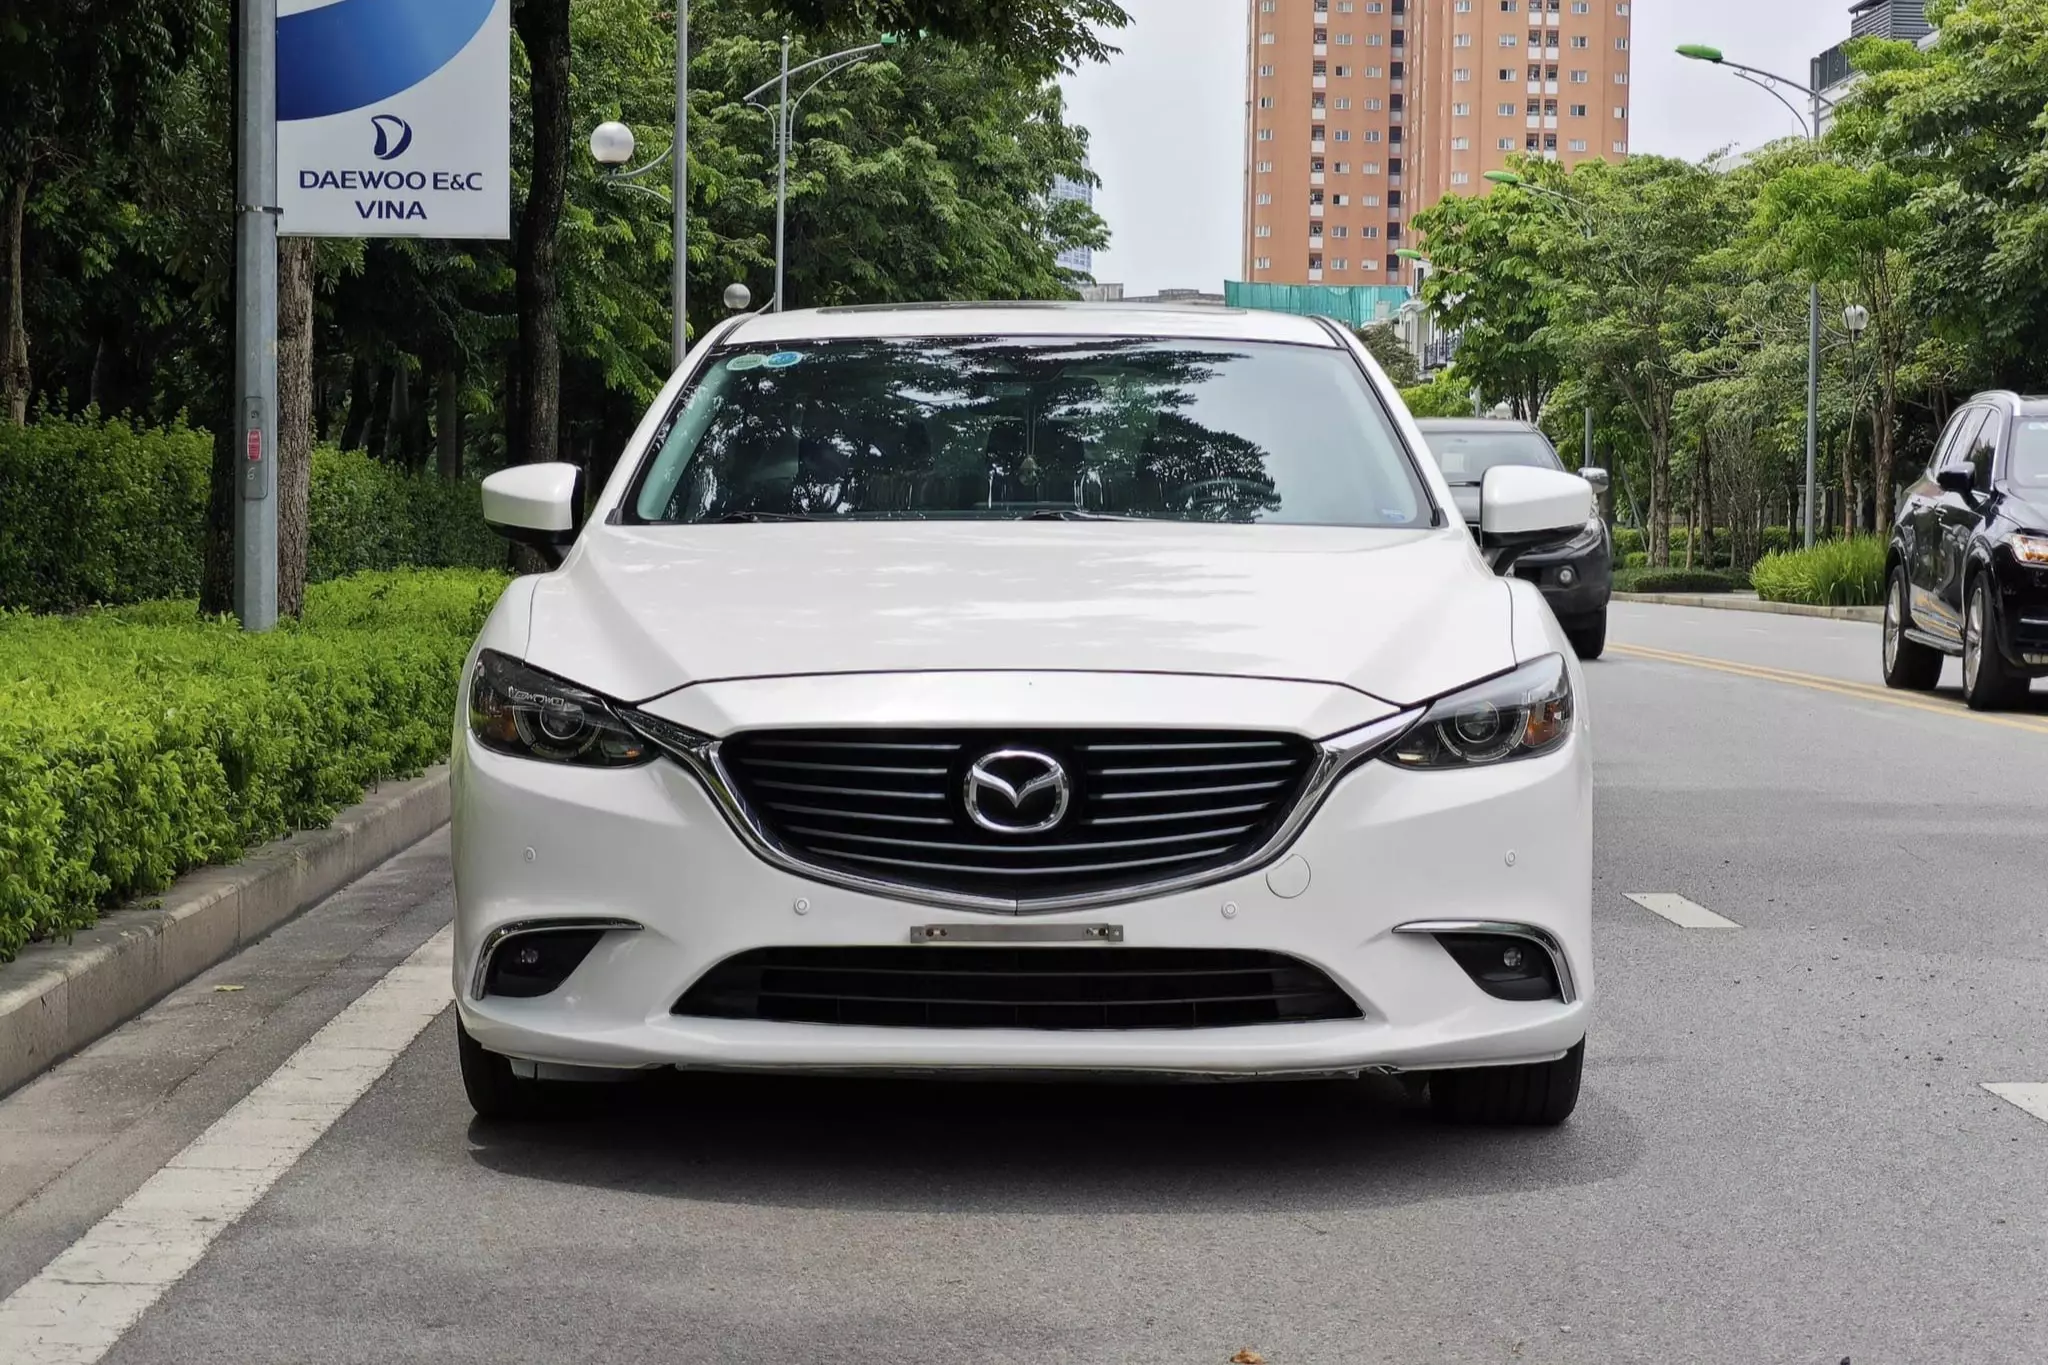 Mazda6 cũ đời 2018 giá 580 triệu đồng, có nên mua thời điểm này? - 3